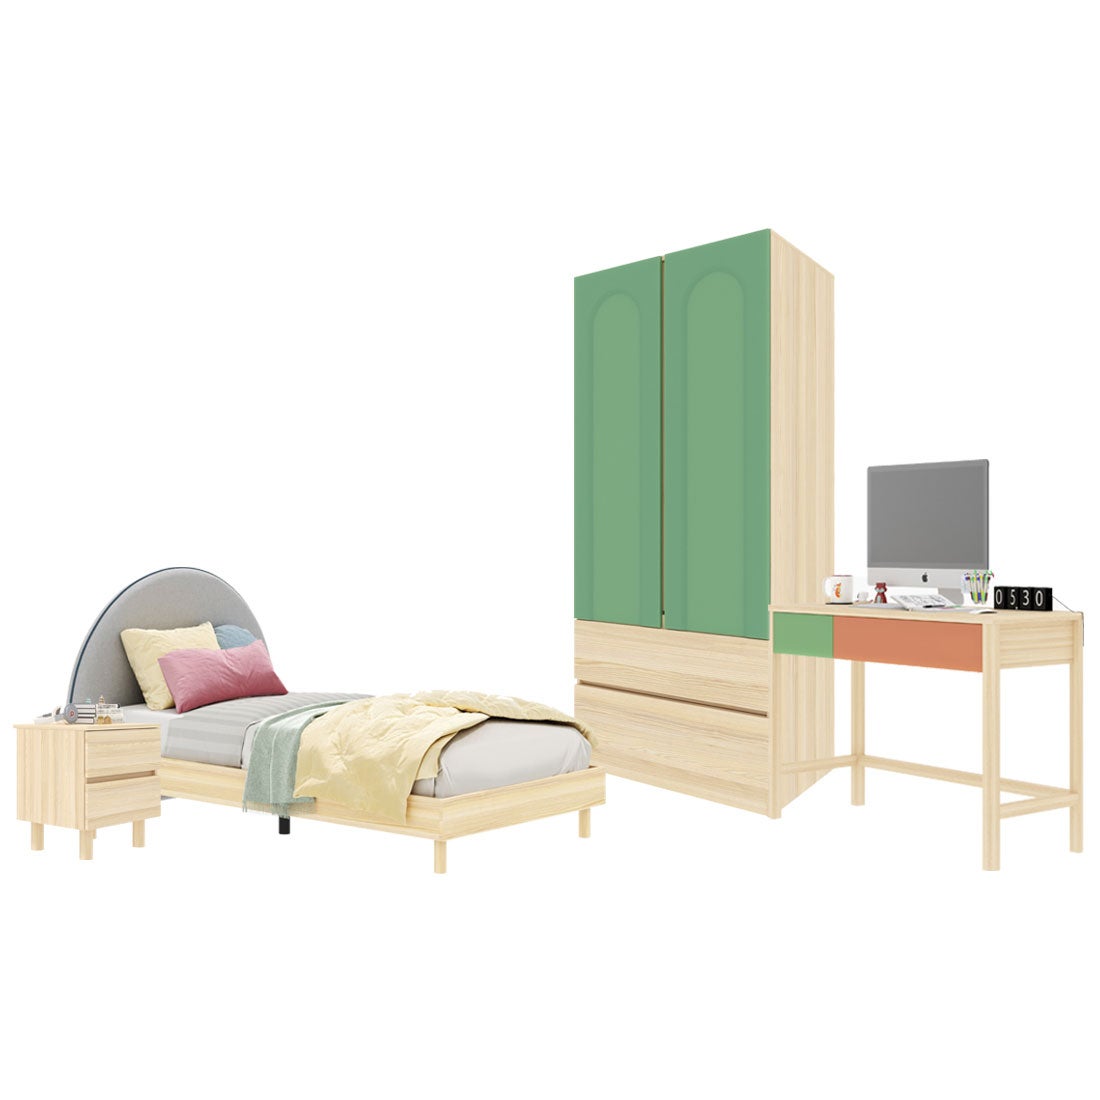 ชุดห้องนอน ขนาด 3.5 ฟุต-เบาะครีม รุ่น Bingsoo & ตู้เสื้อผ้าลิ้นชัก 90 ซม. พร้อมตู้ข้างเตียง สีเขียว01